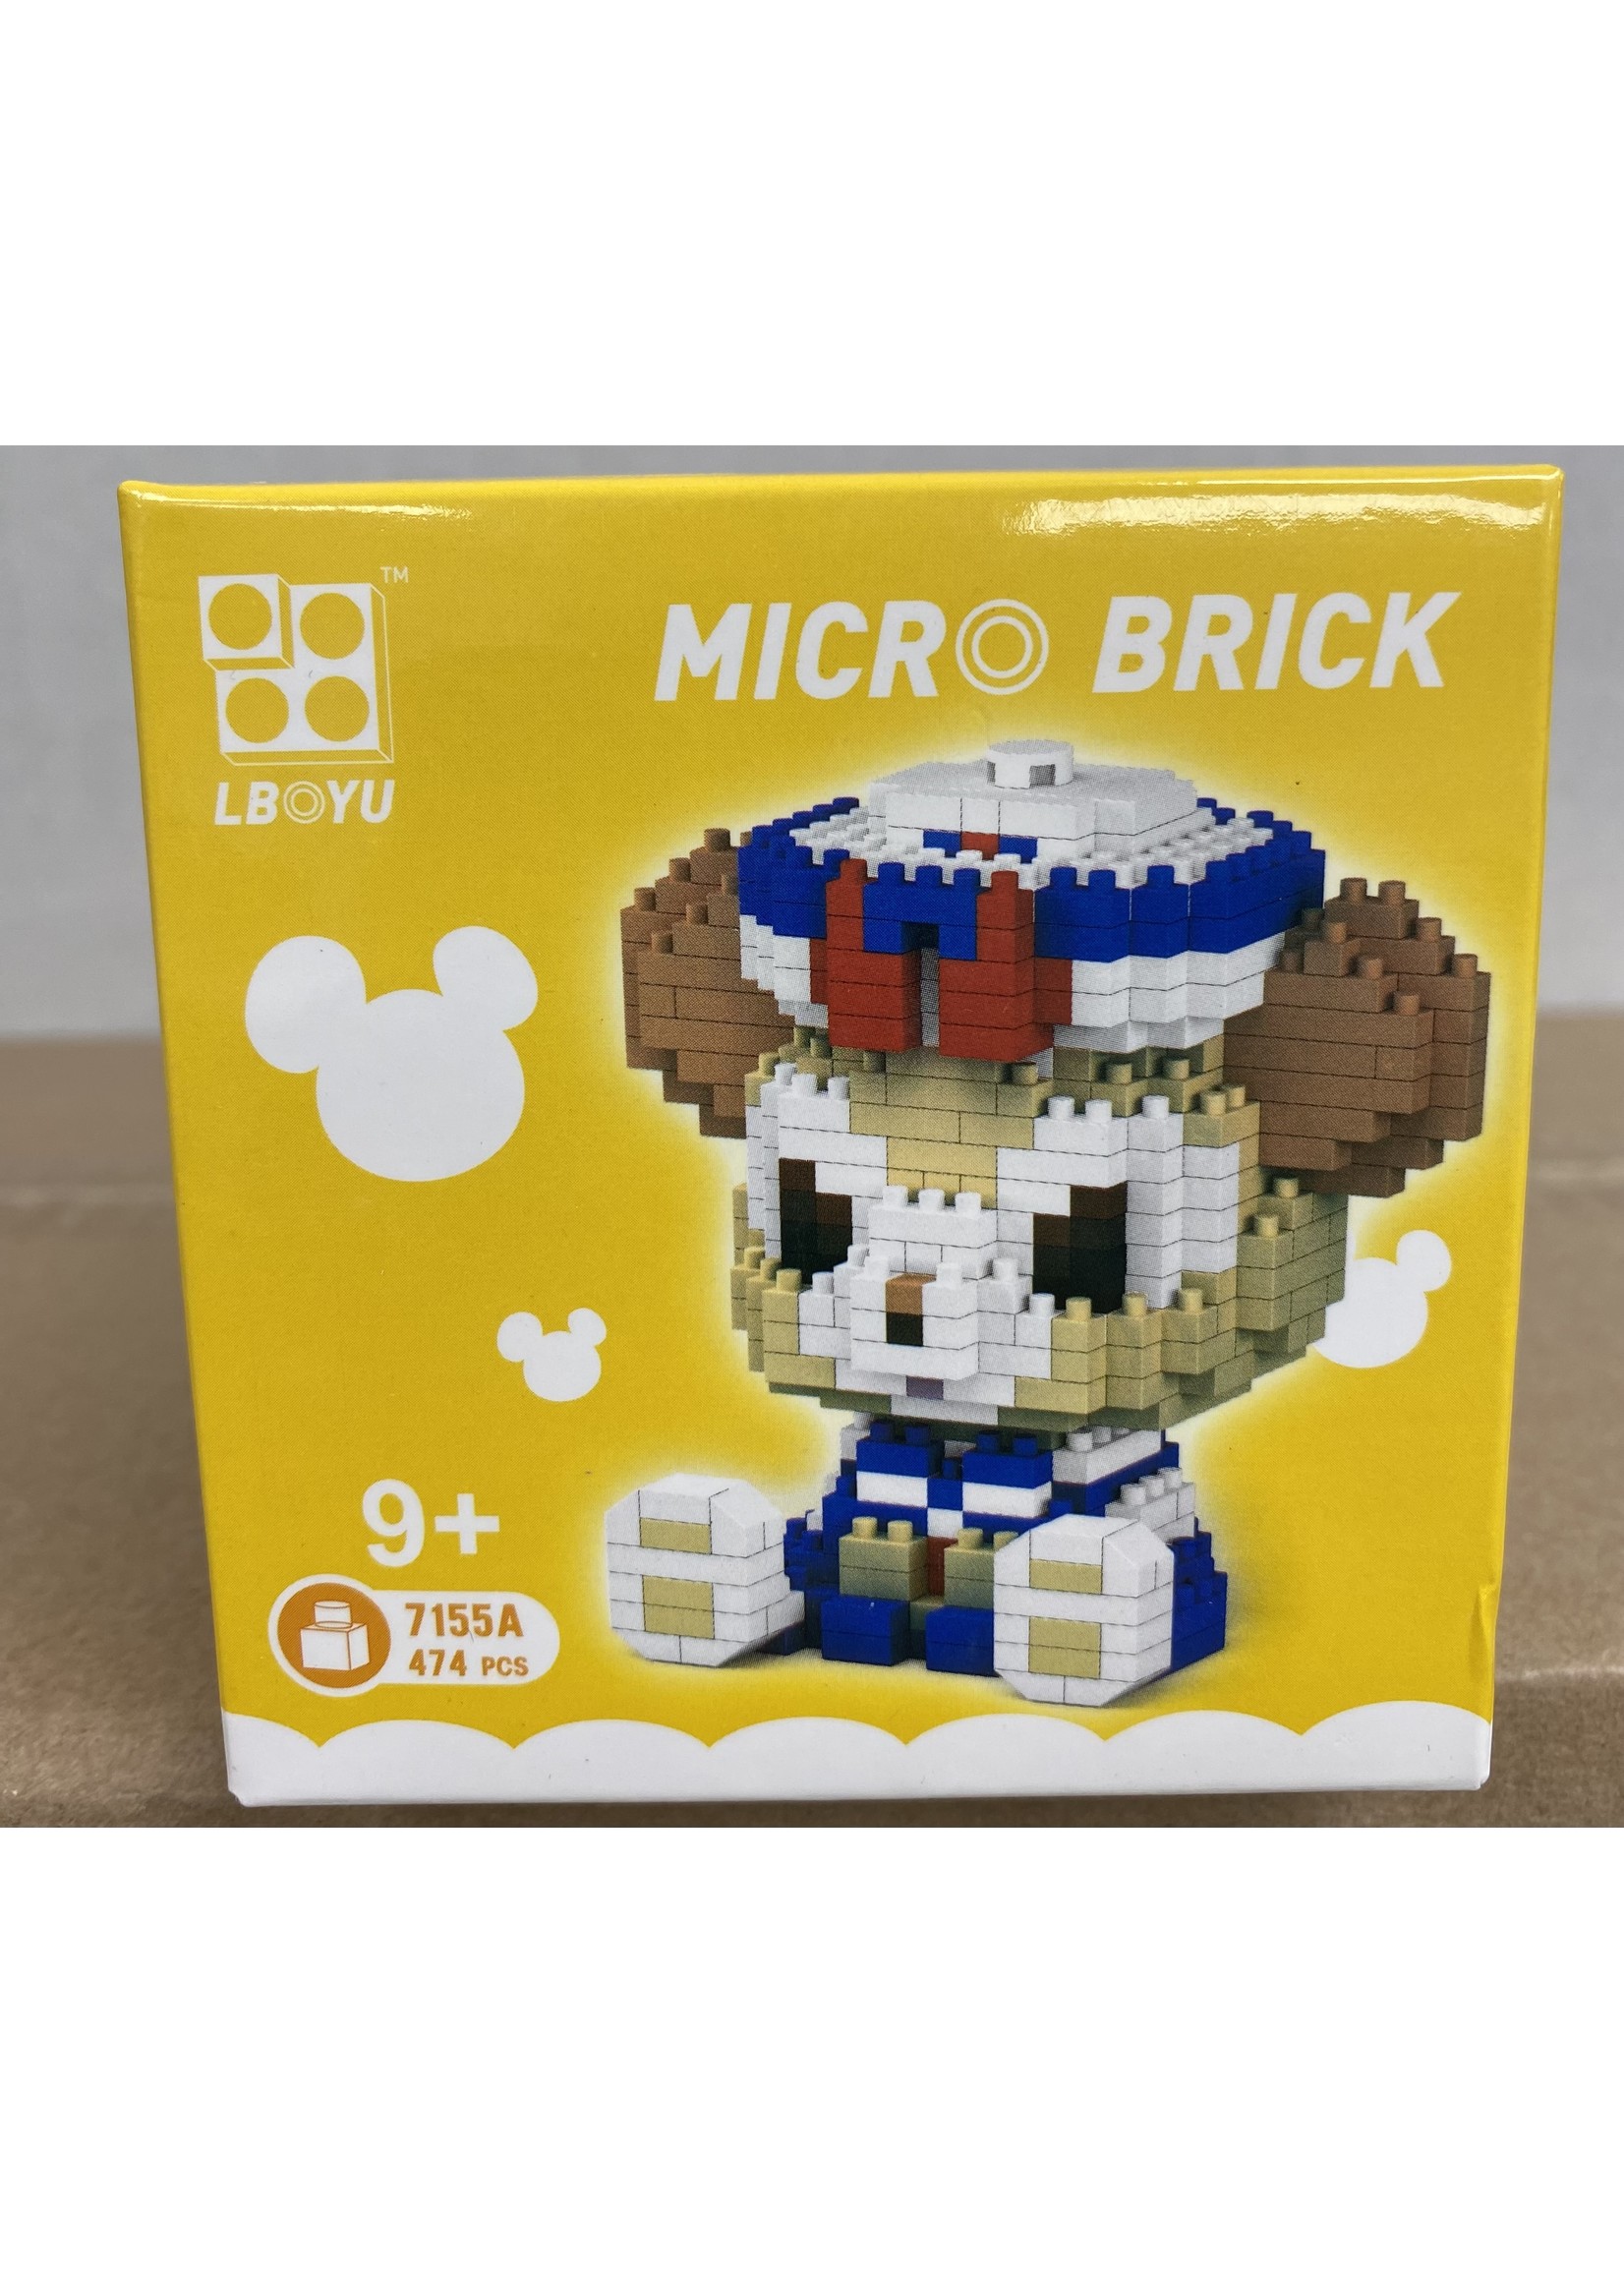 Micro Brick - 7155A